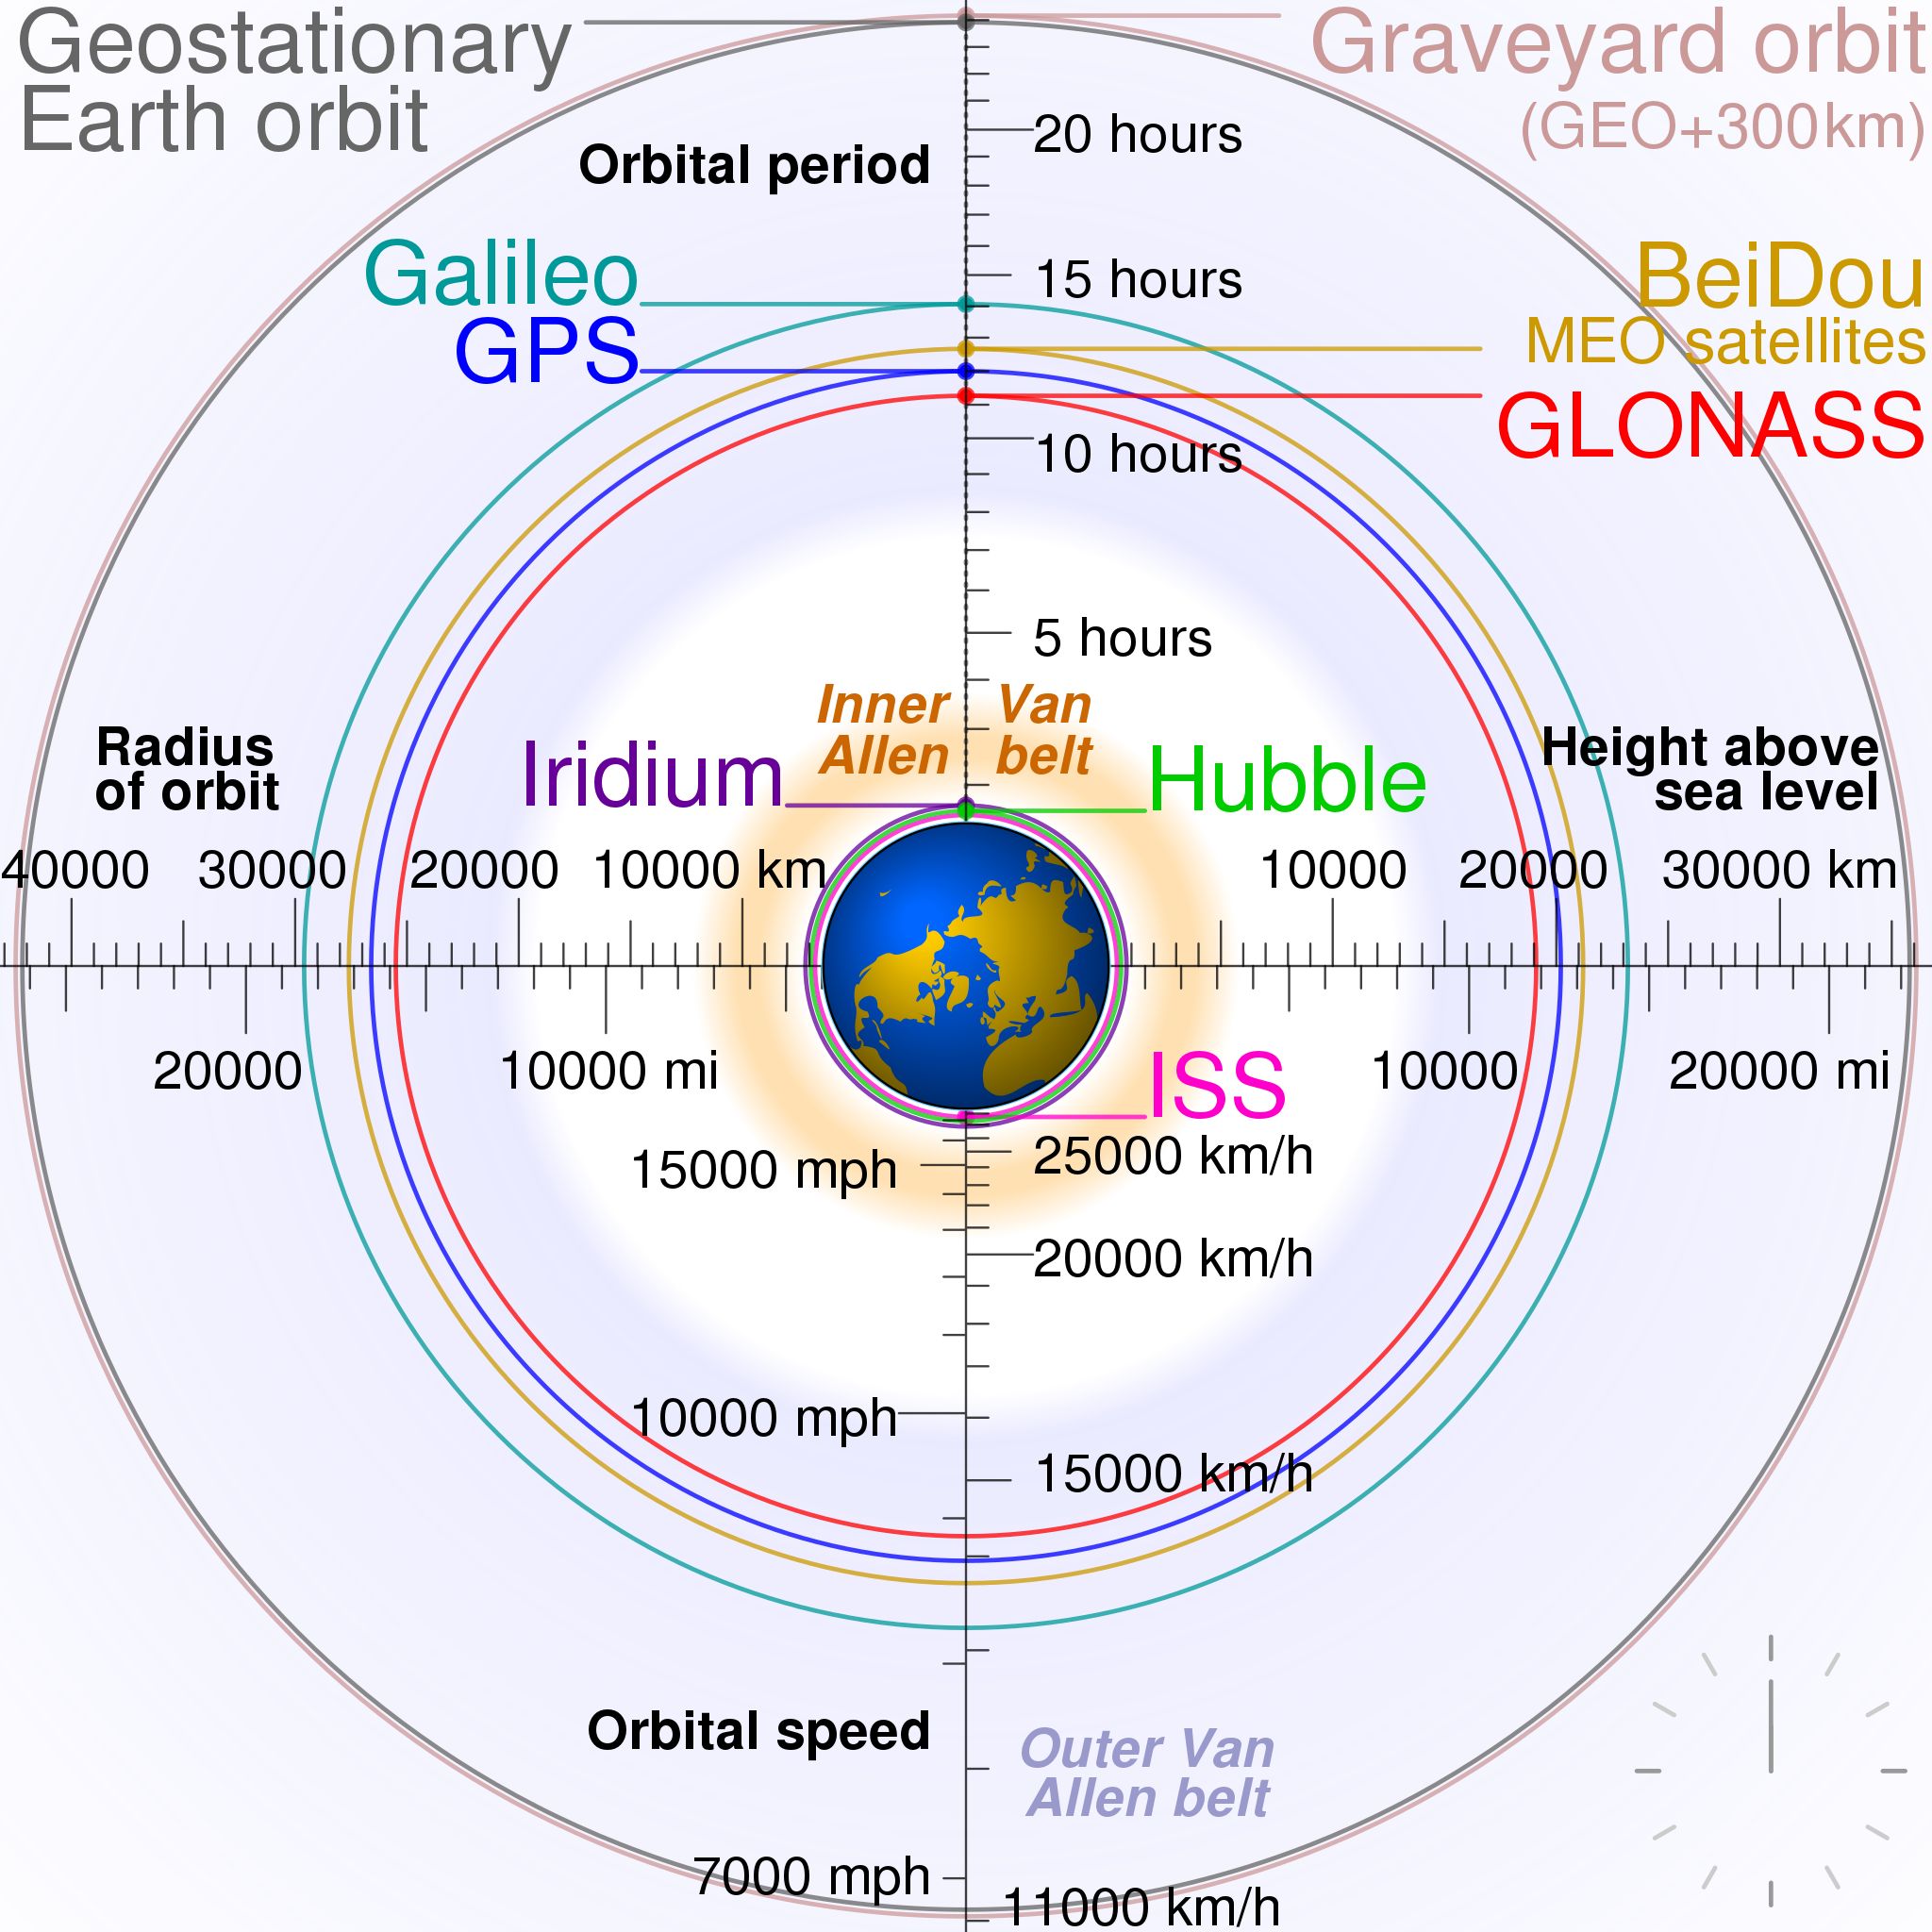 Vergleich der Orbits verschiedener Navigationssatelliten